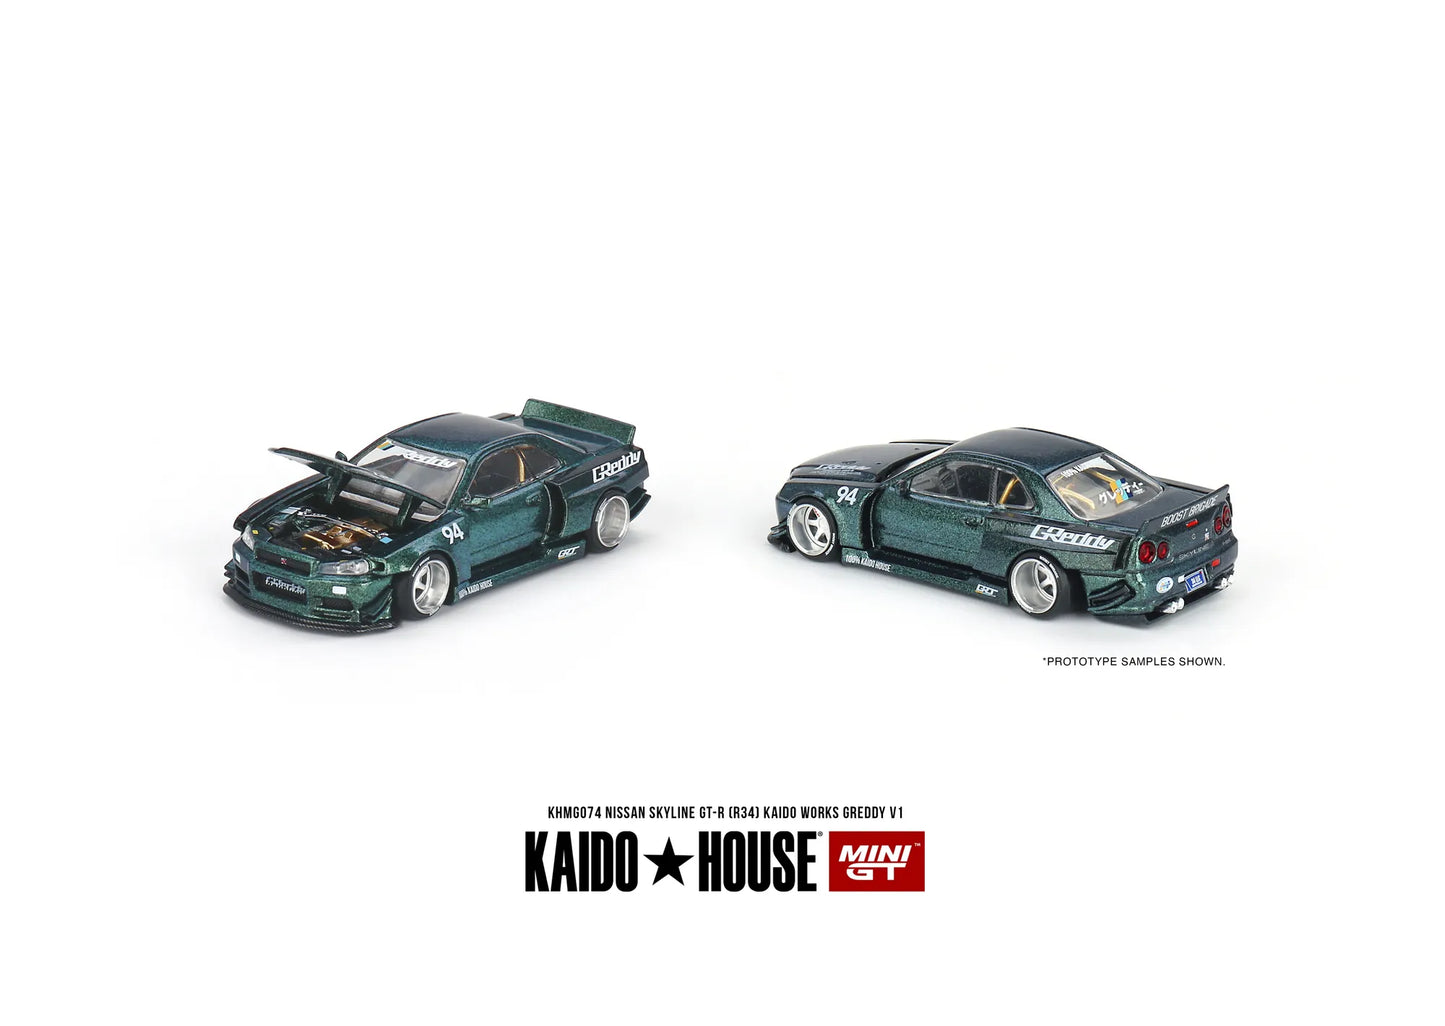 Mini GT x Kaido House #74 1:64 Nissan Skyline GT-R (R34) Kaido Works GReddy V1